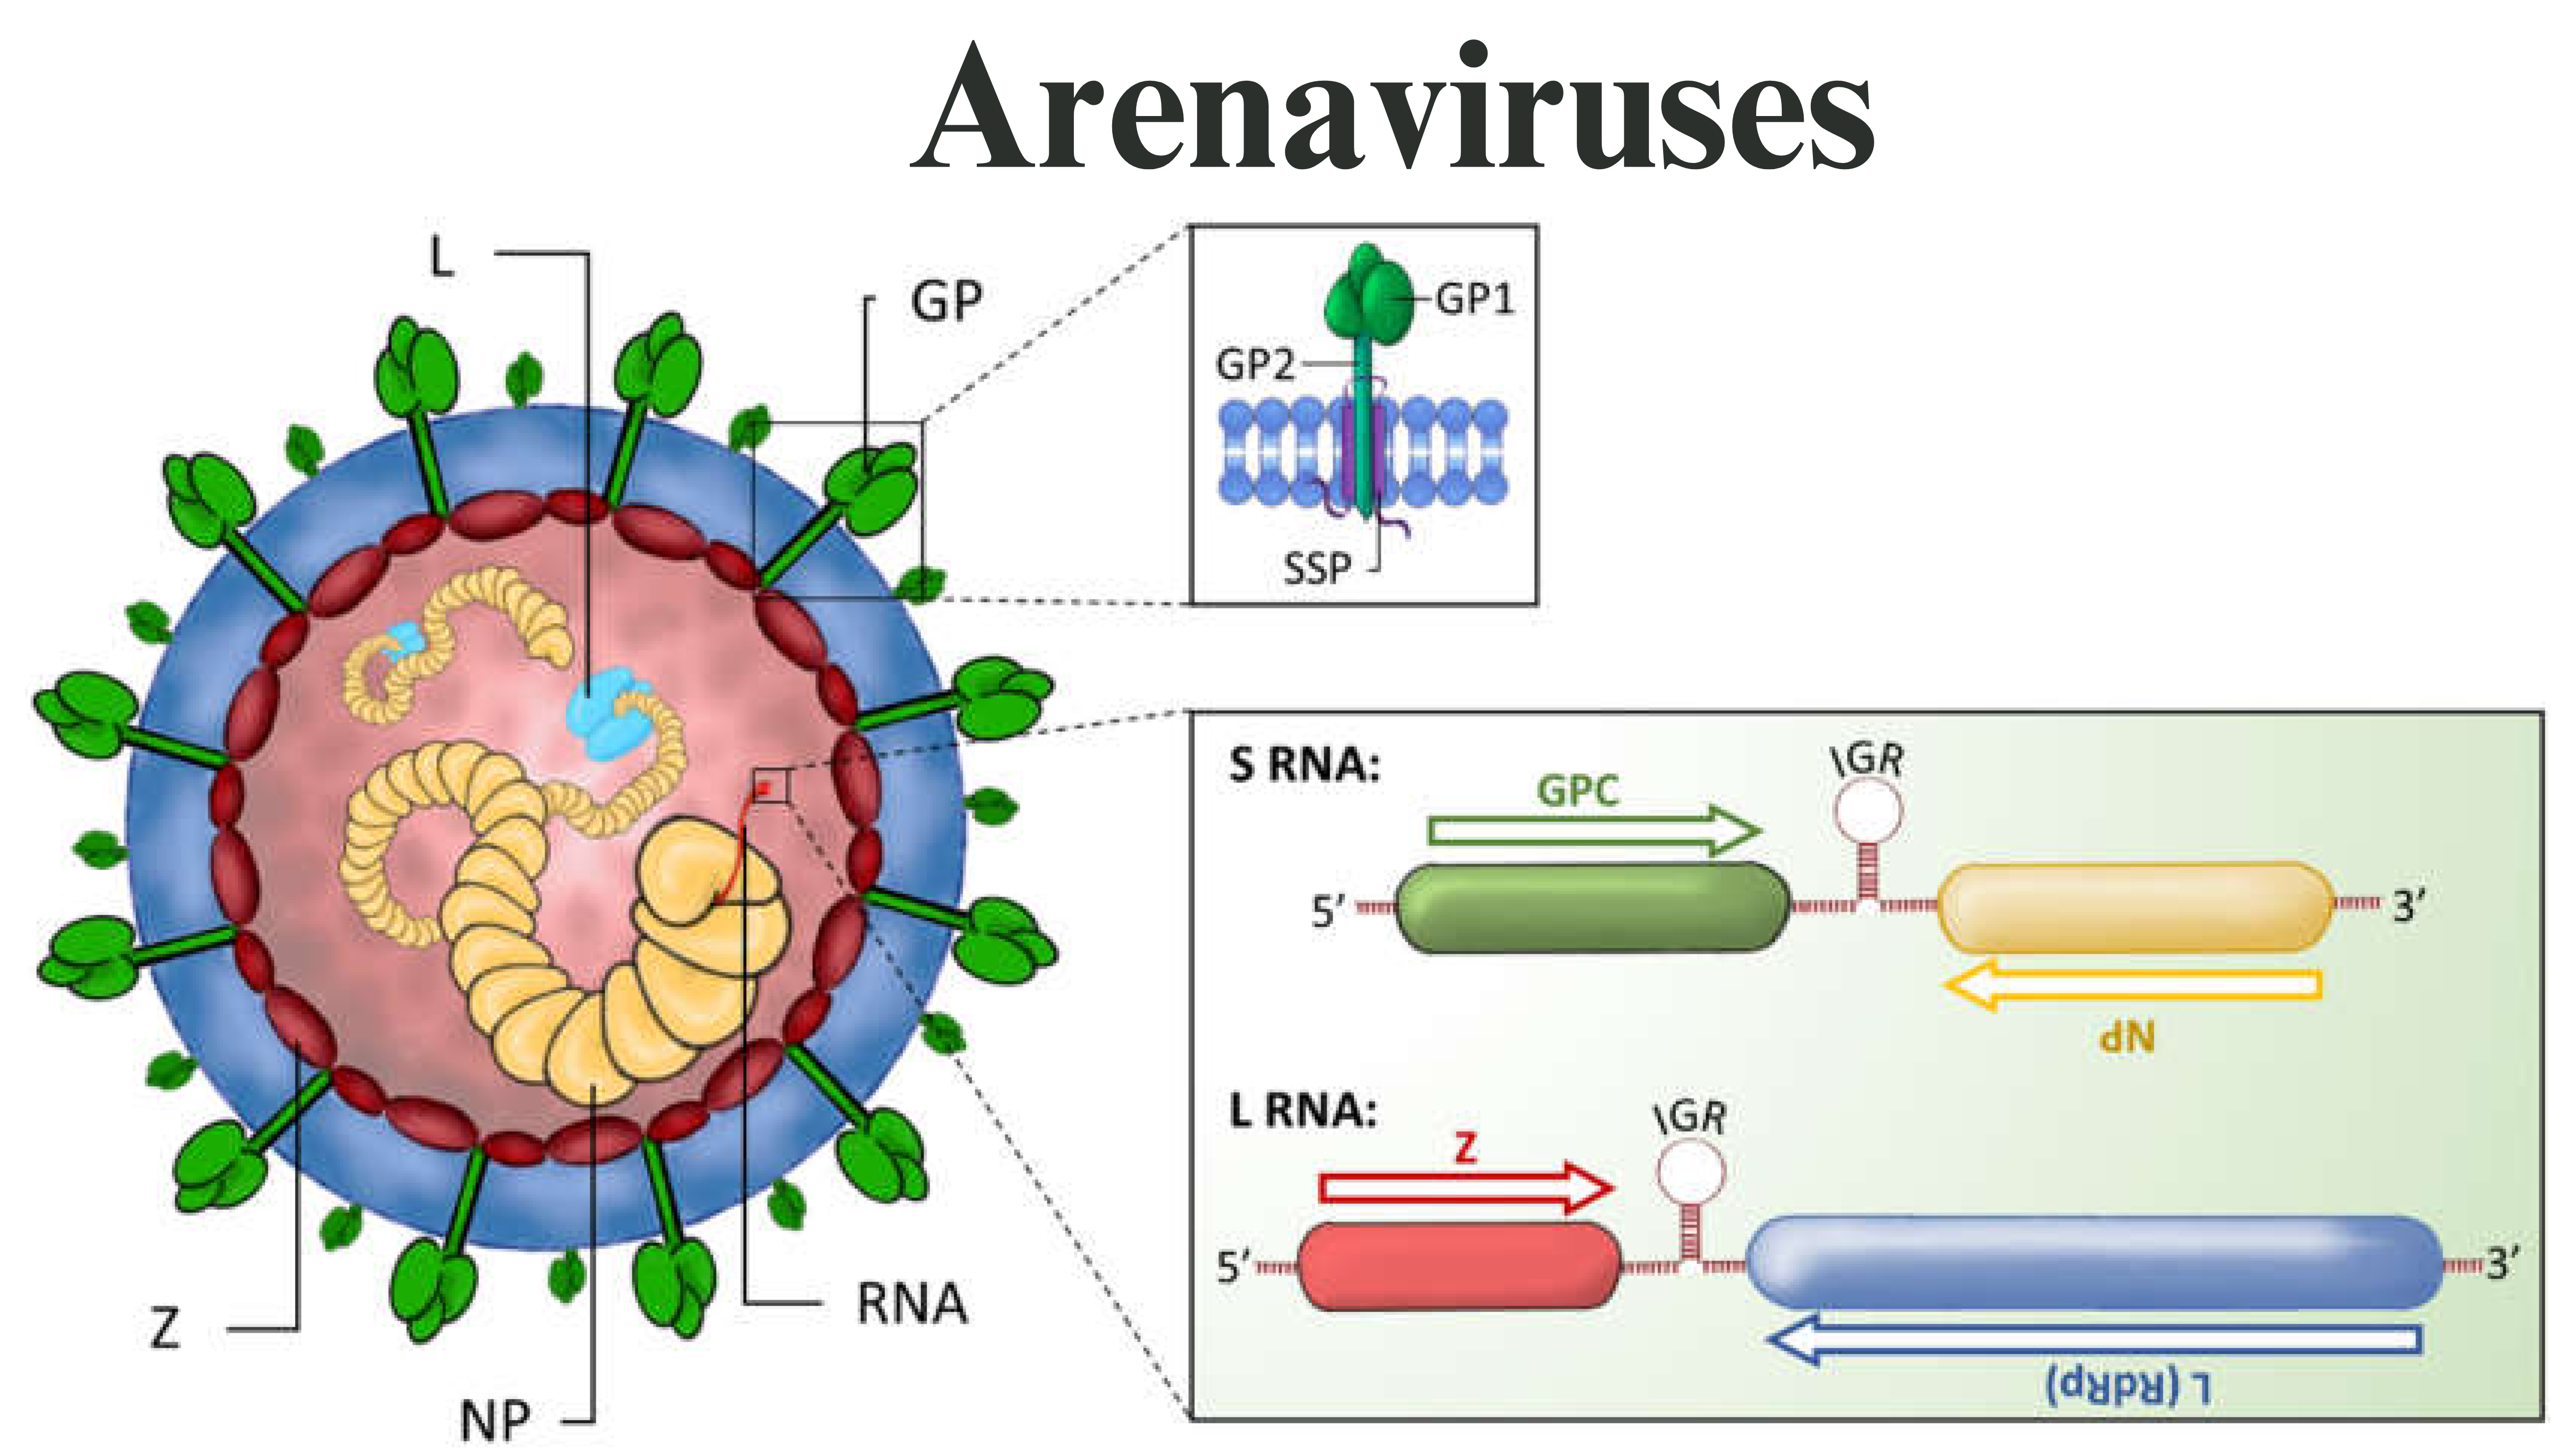 Arenaviruses